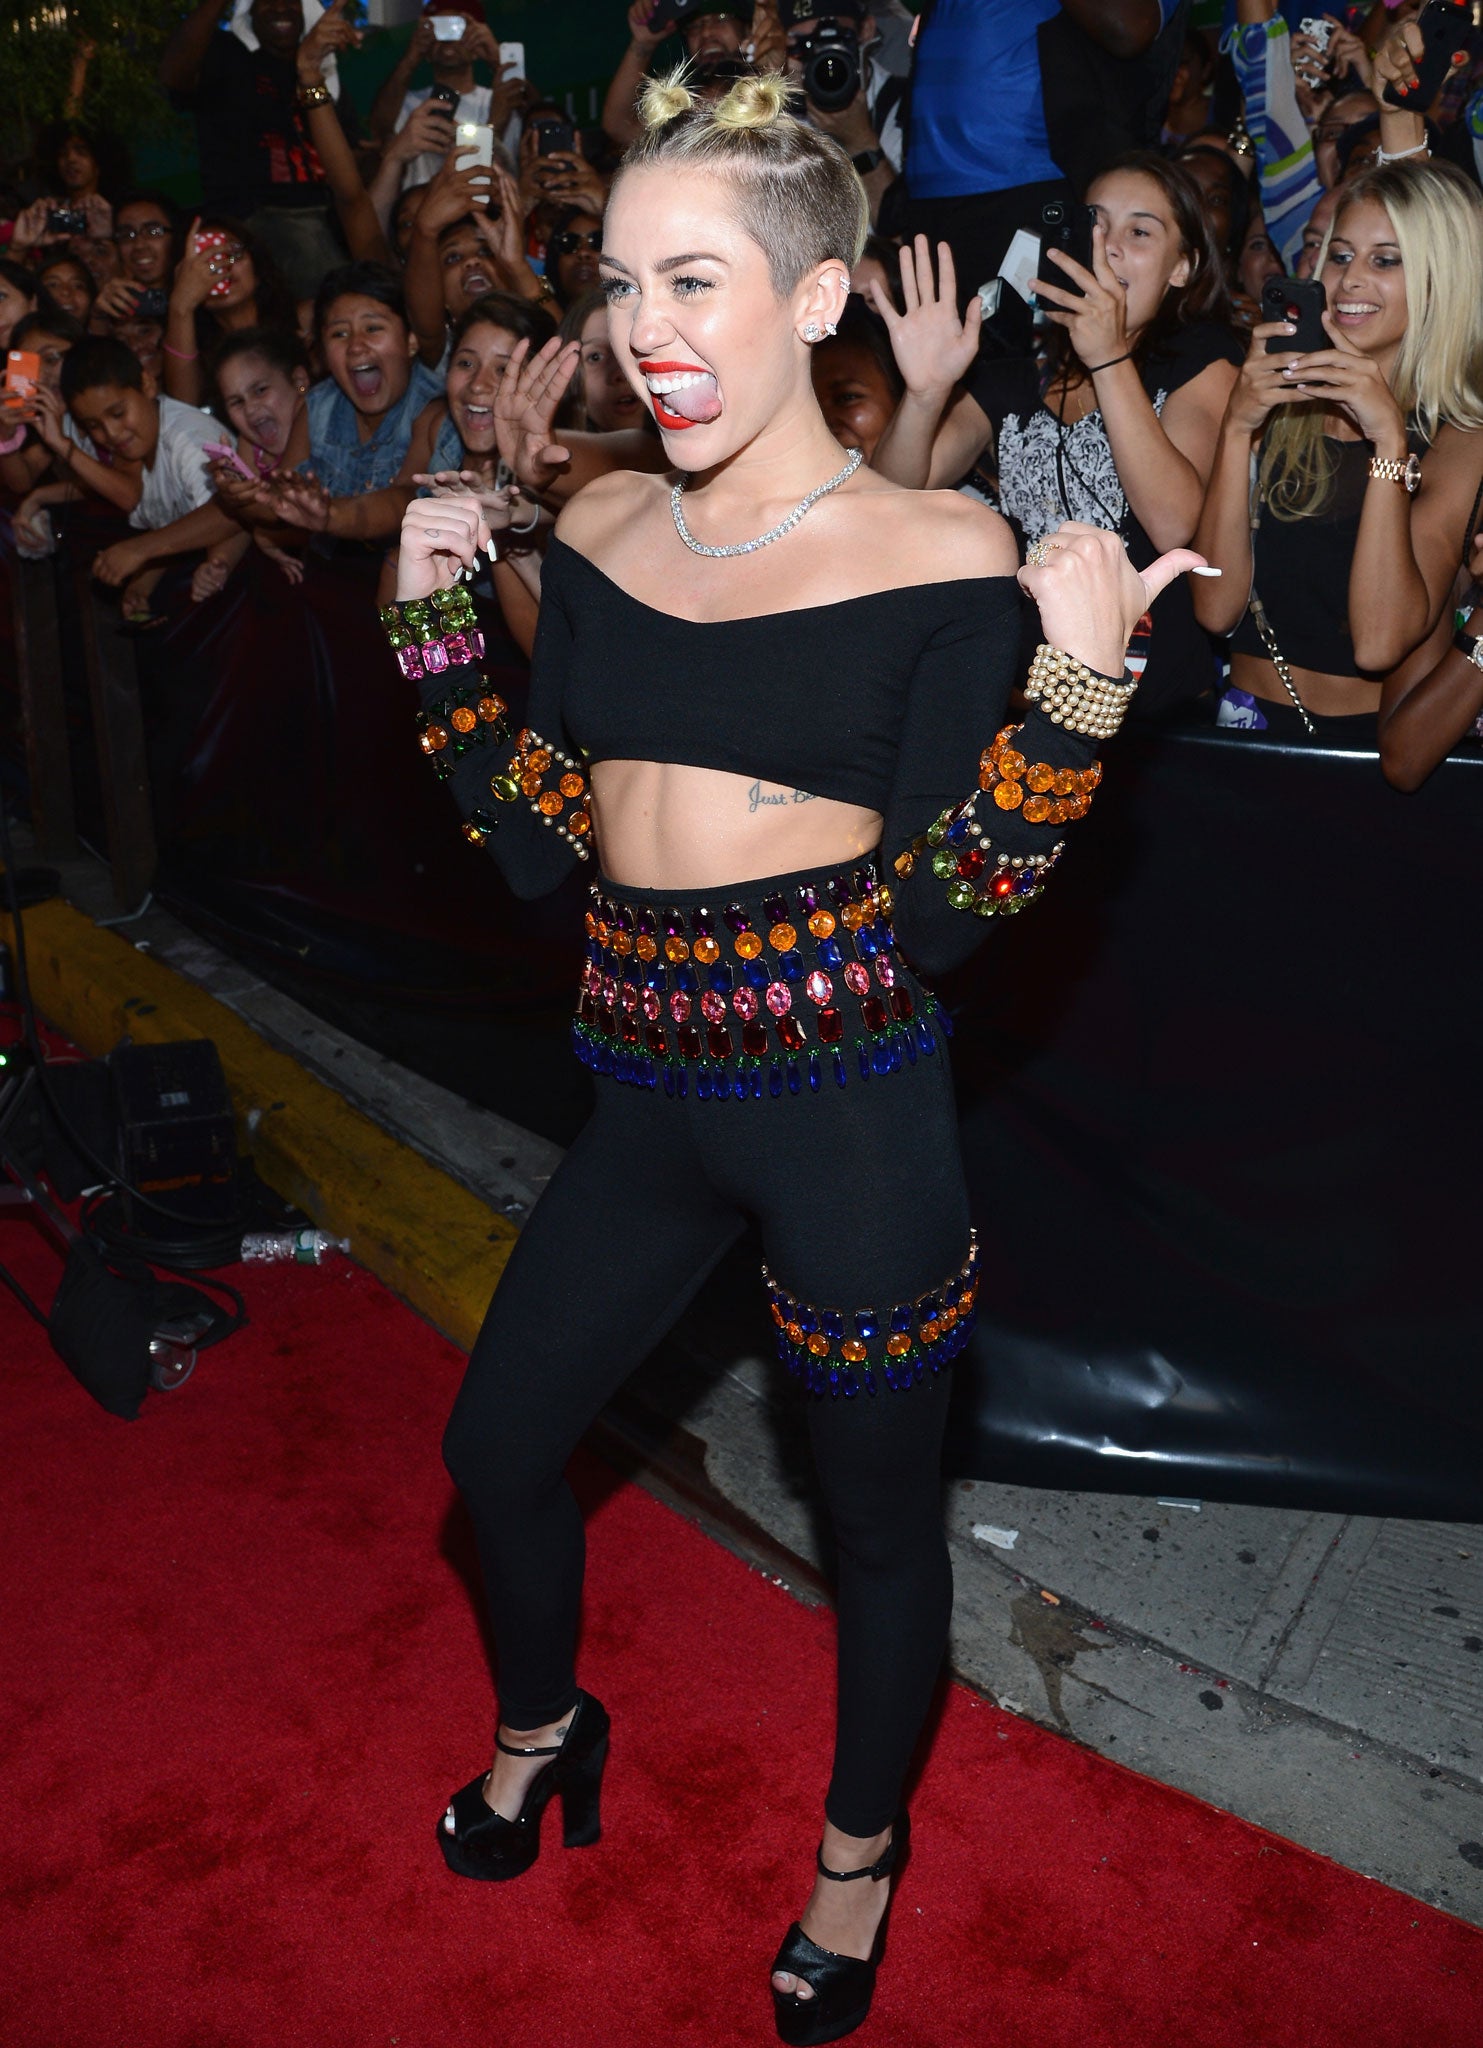 Miley Cyrus could win big at the MTV VMAs